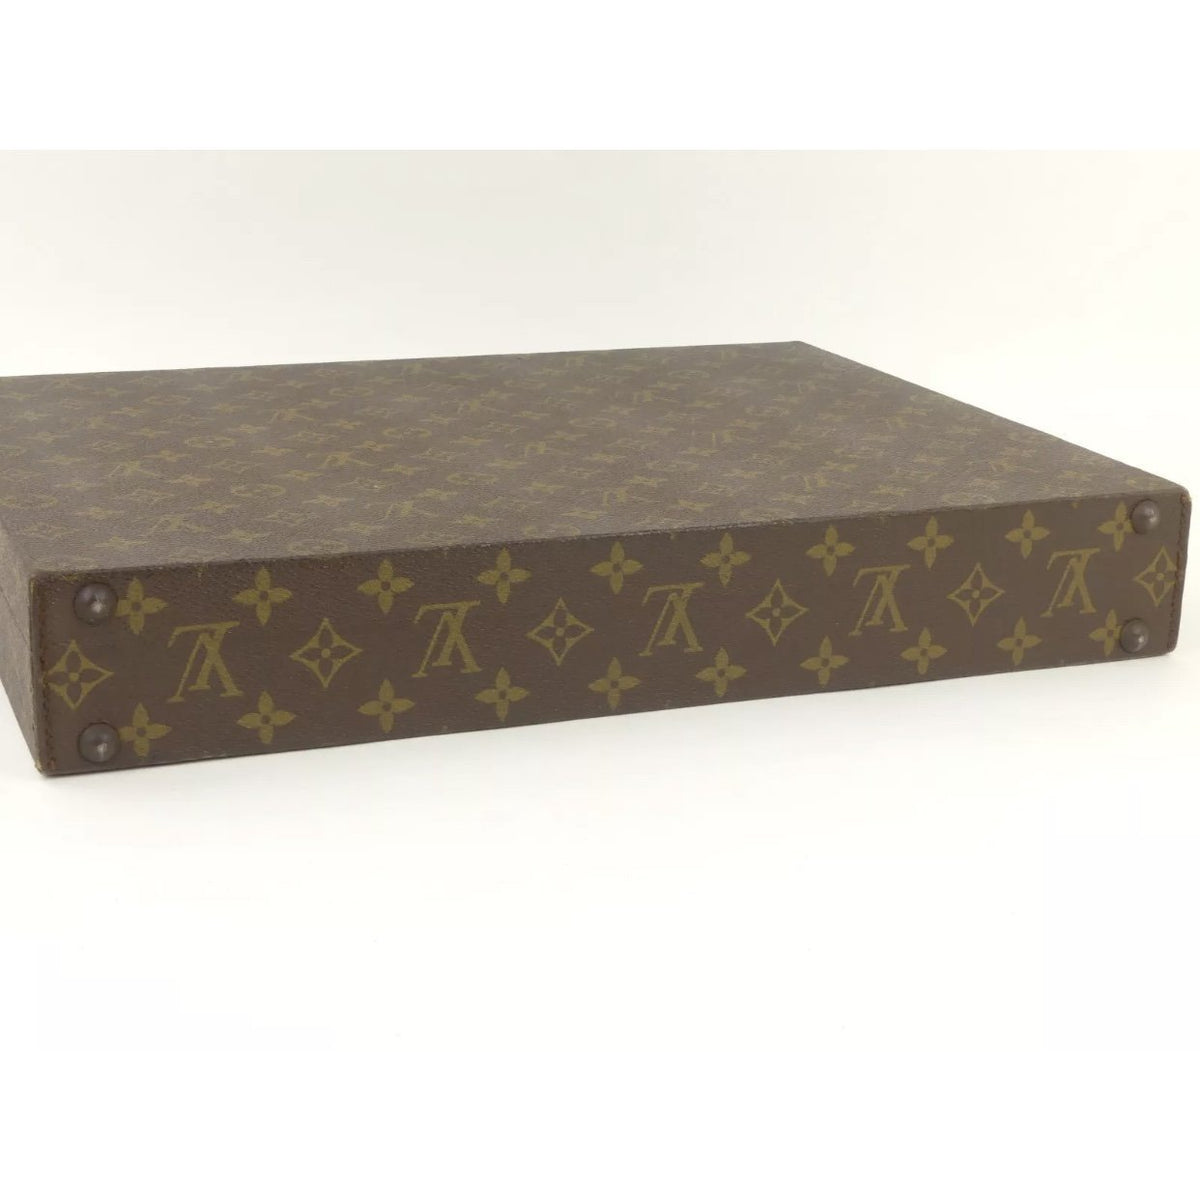 Sold at Auction: Vintage Louis Vuitton Hardbody Attache Briefcase